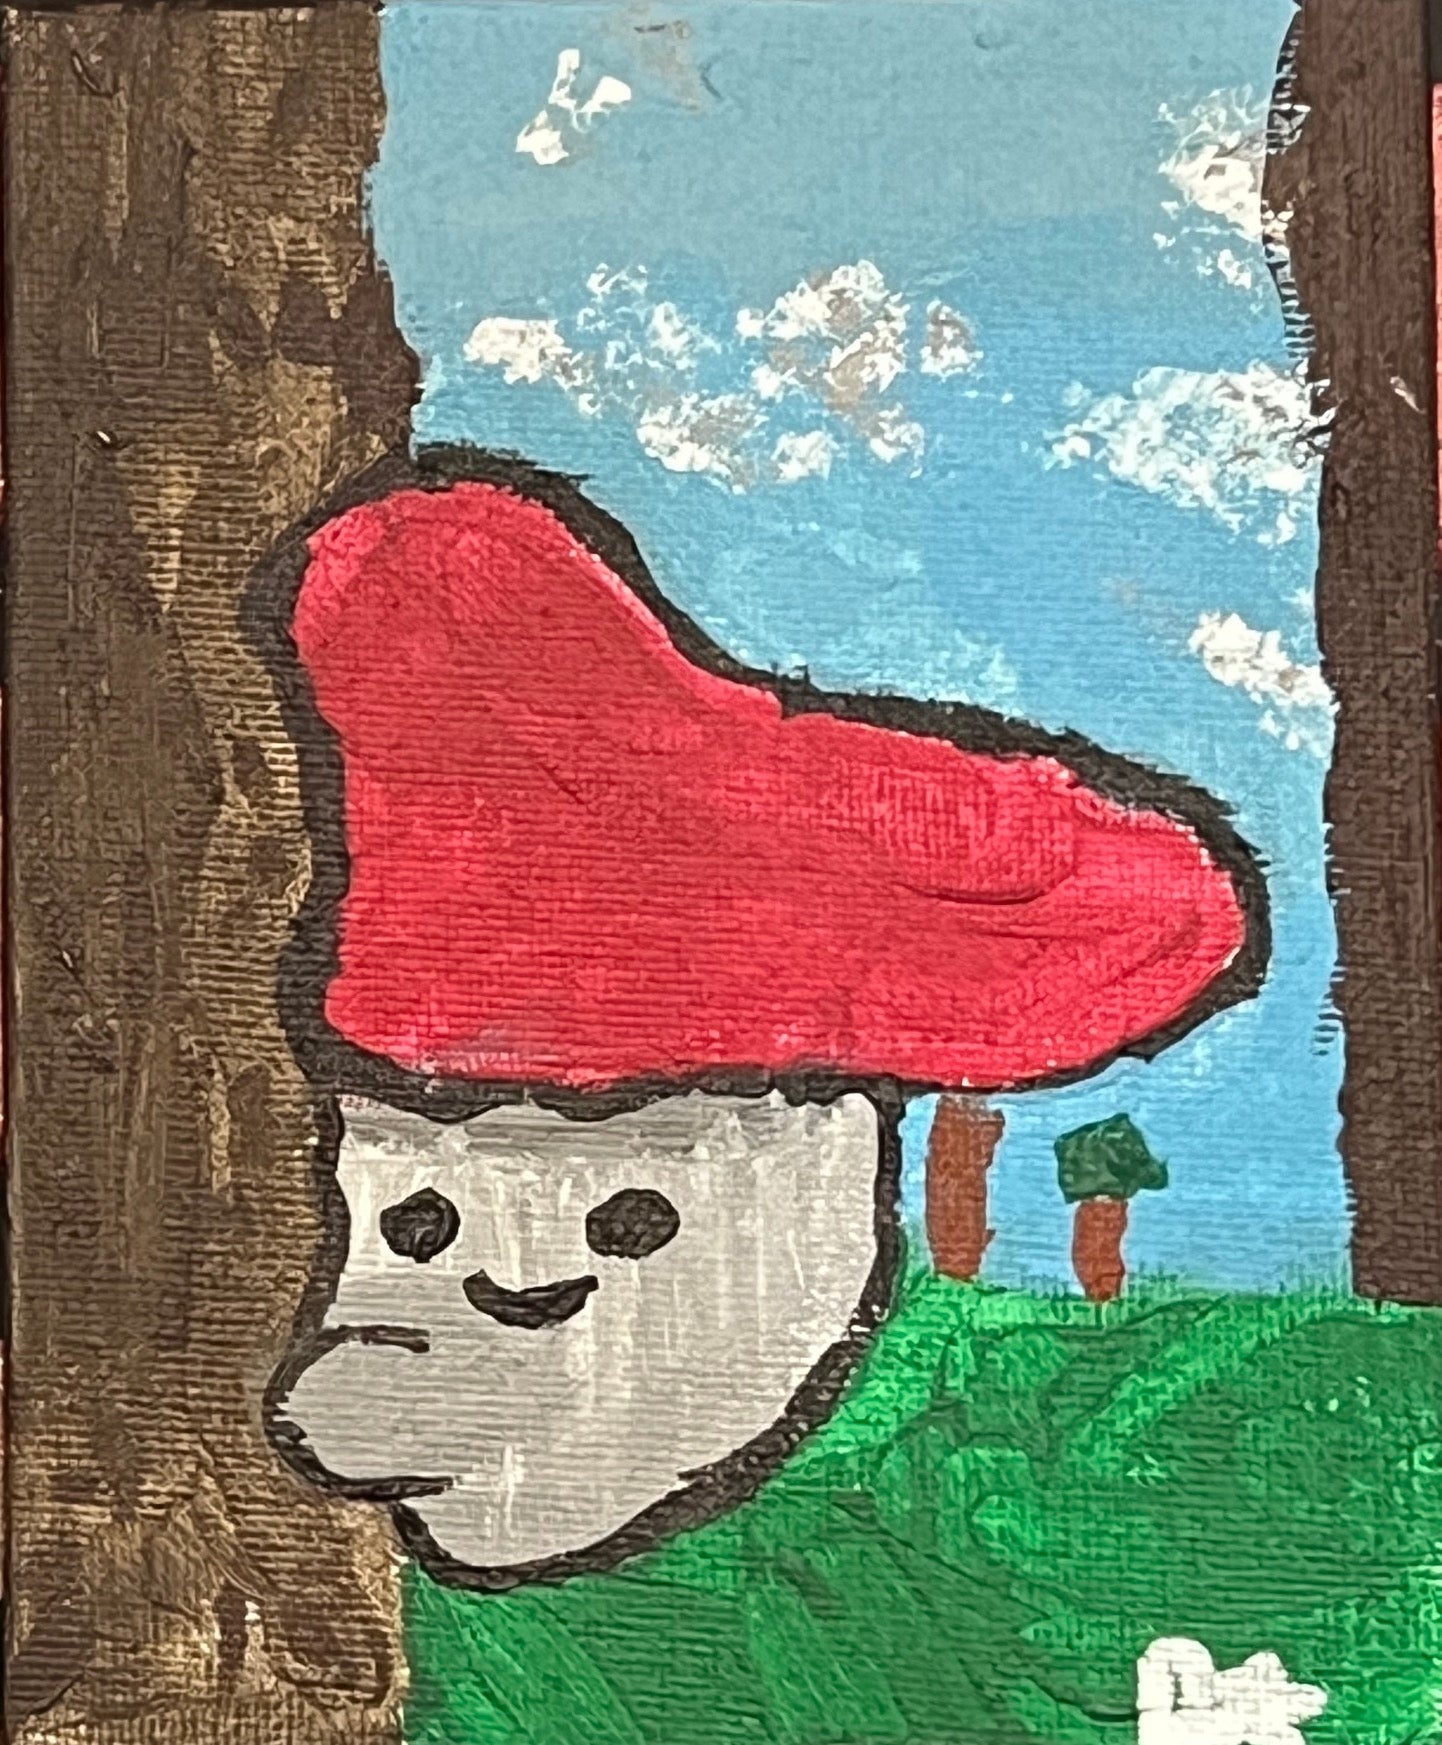 Mr. Huggyshroom & Mr. Worryshroom